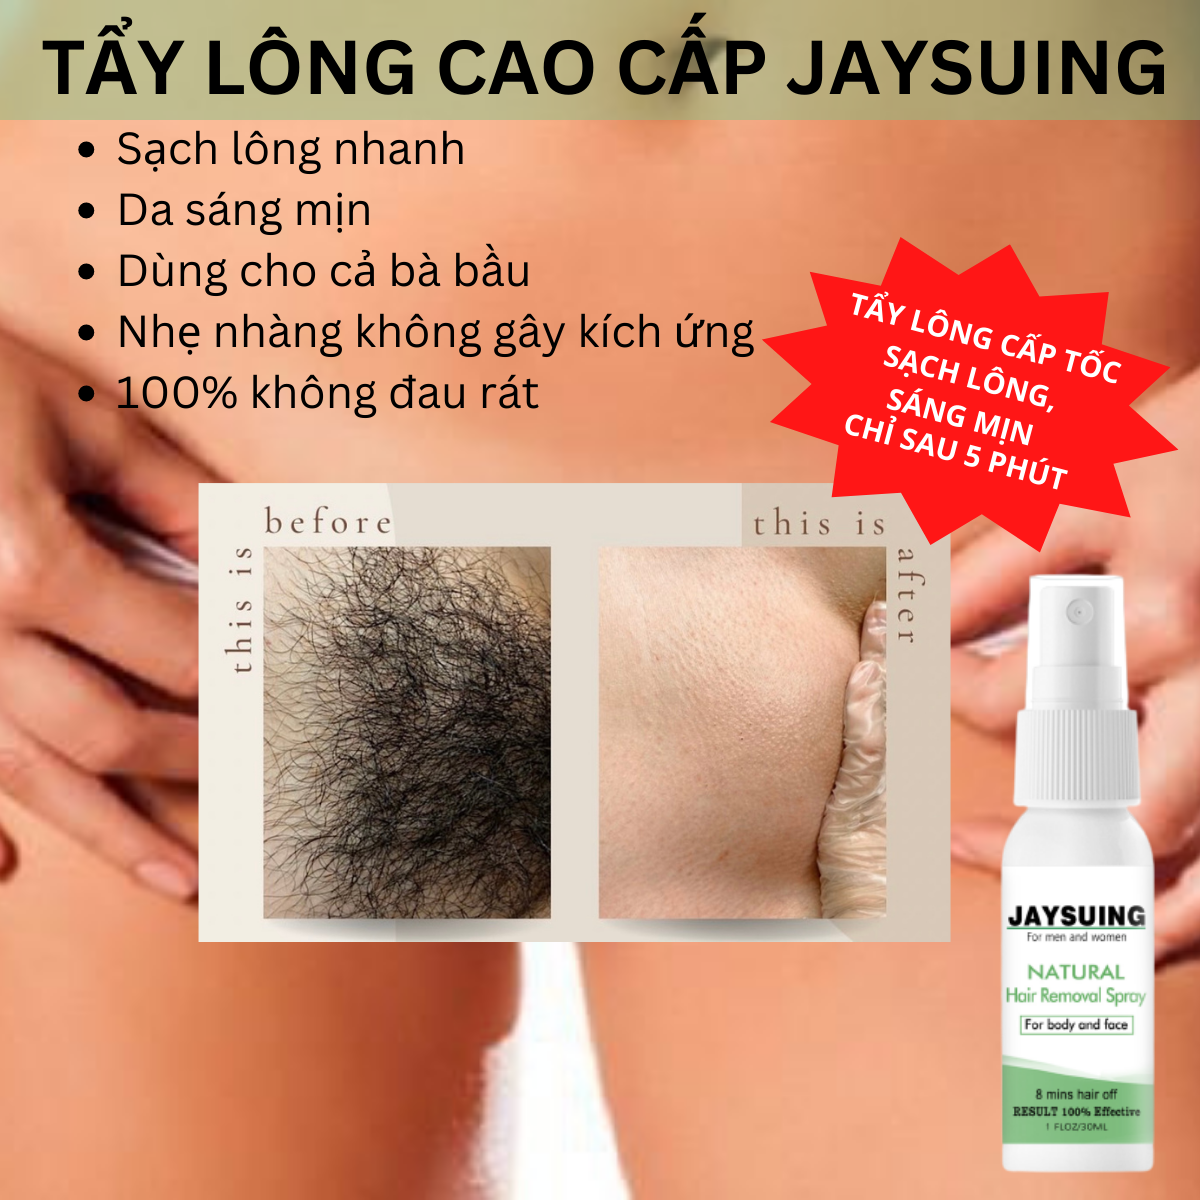 hair removal spray Chất Lượng, Giá Tốt 